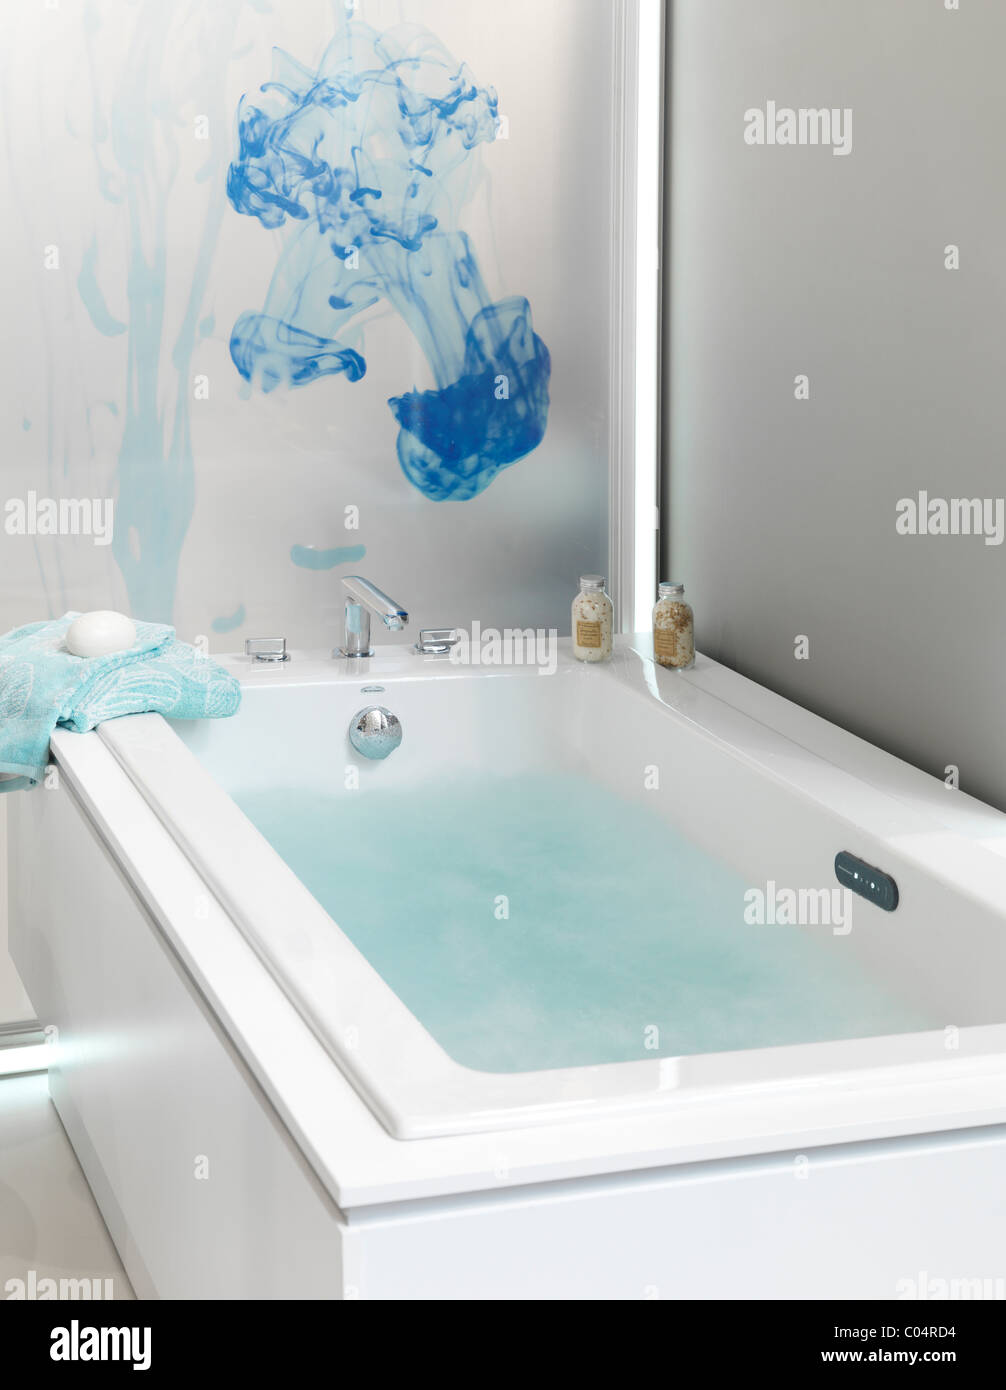 La baignoire remplie d'eau Photo Stock - Alamy